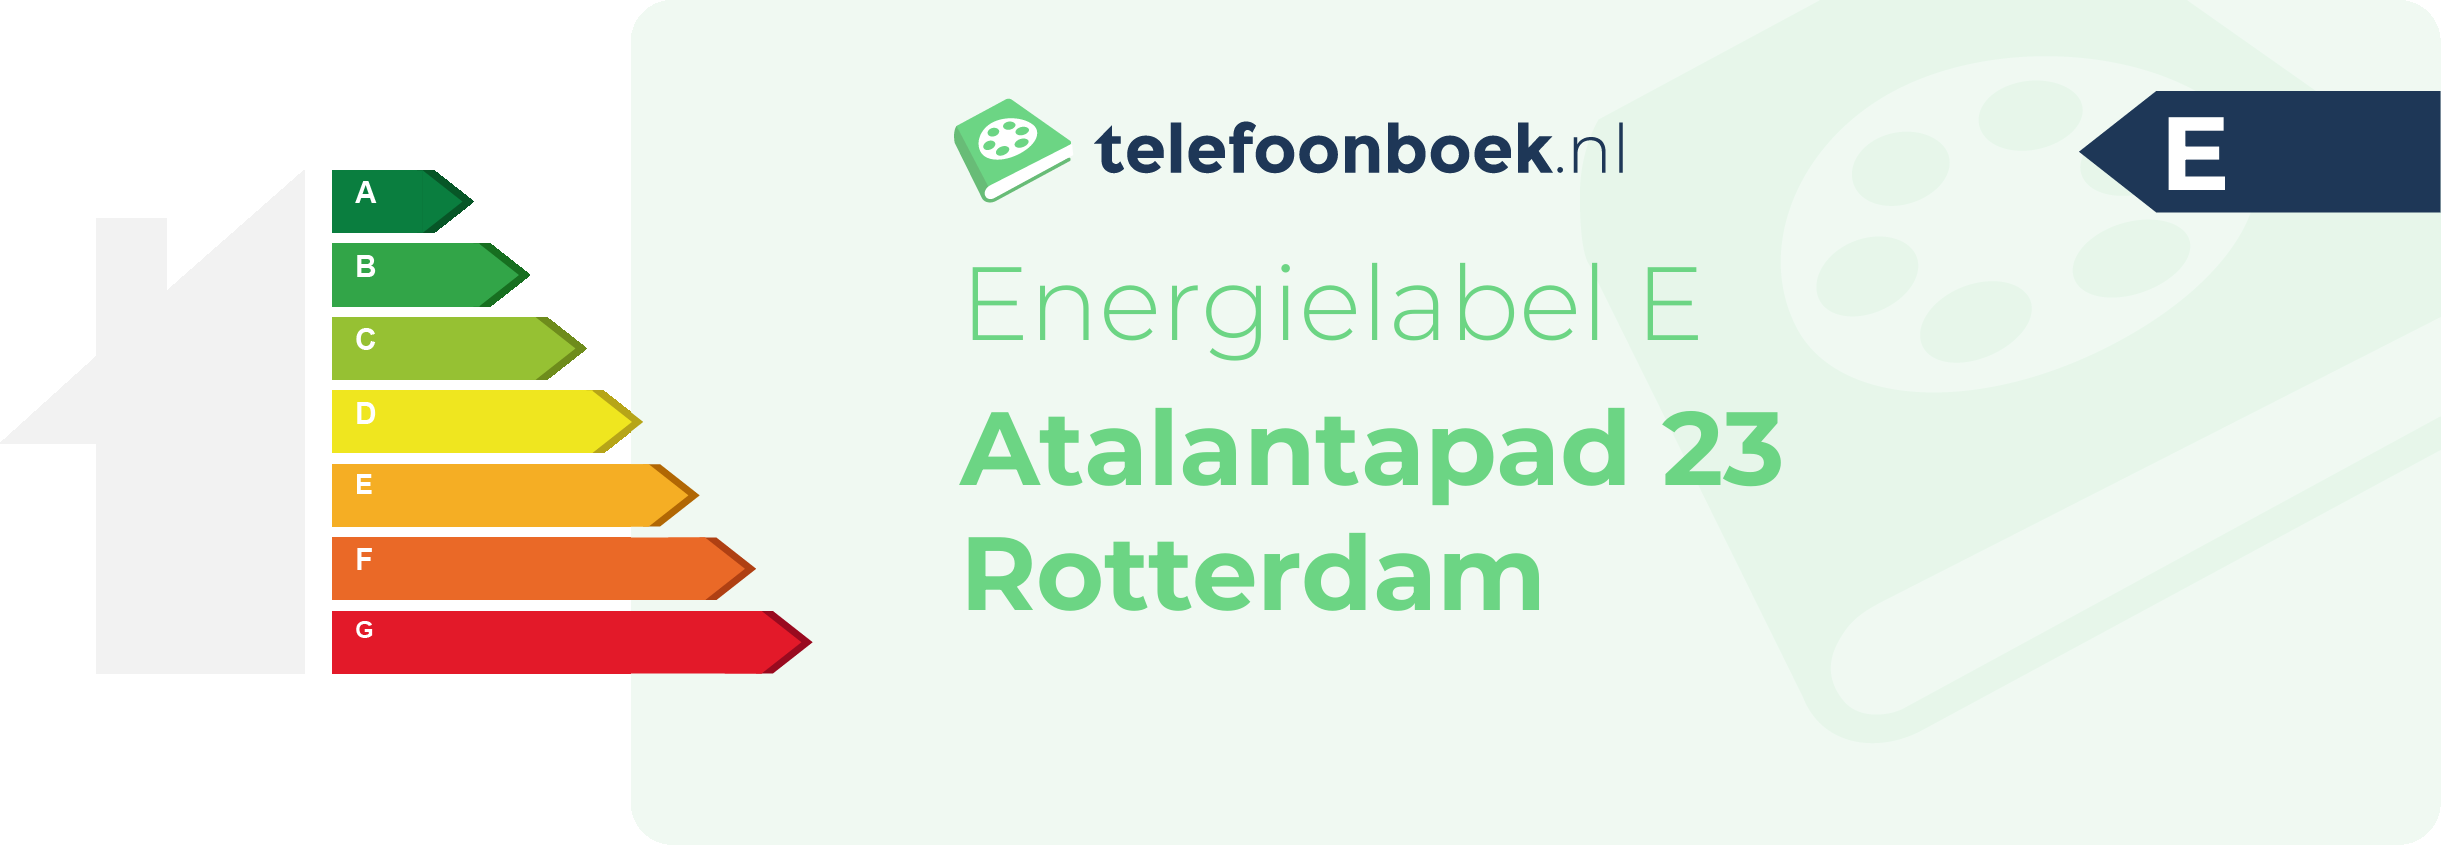 Energielabel Atalantapad 23 Rotterdam